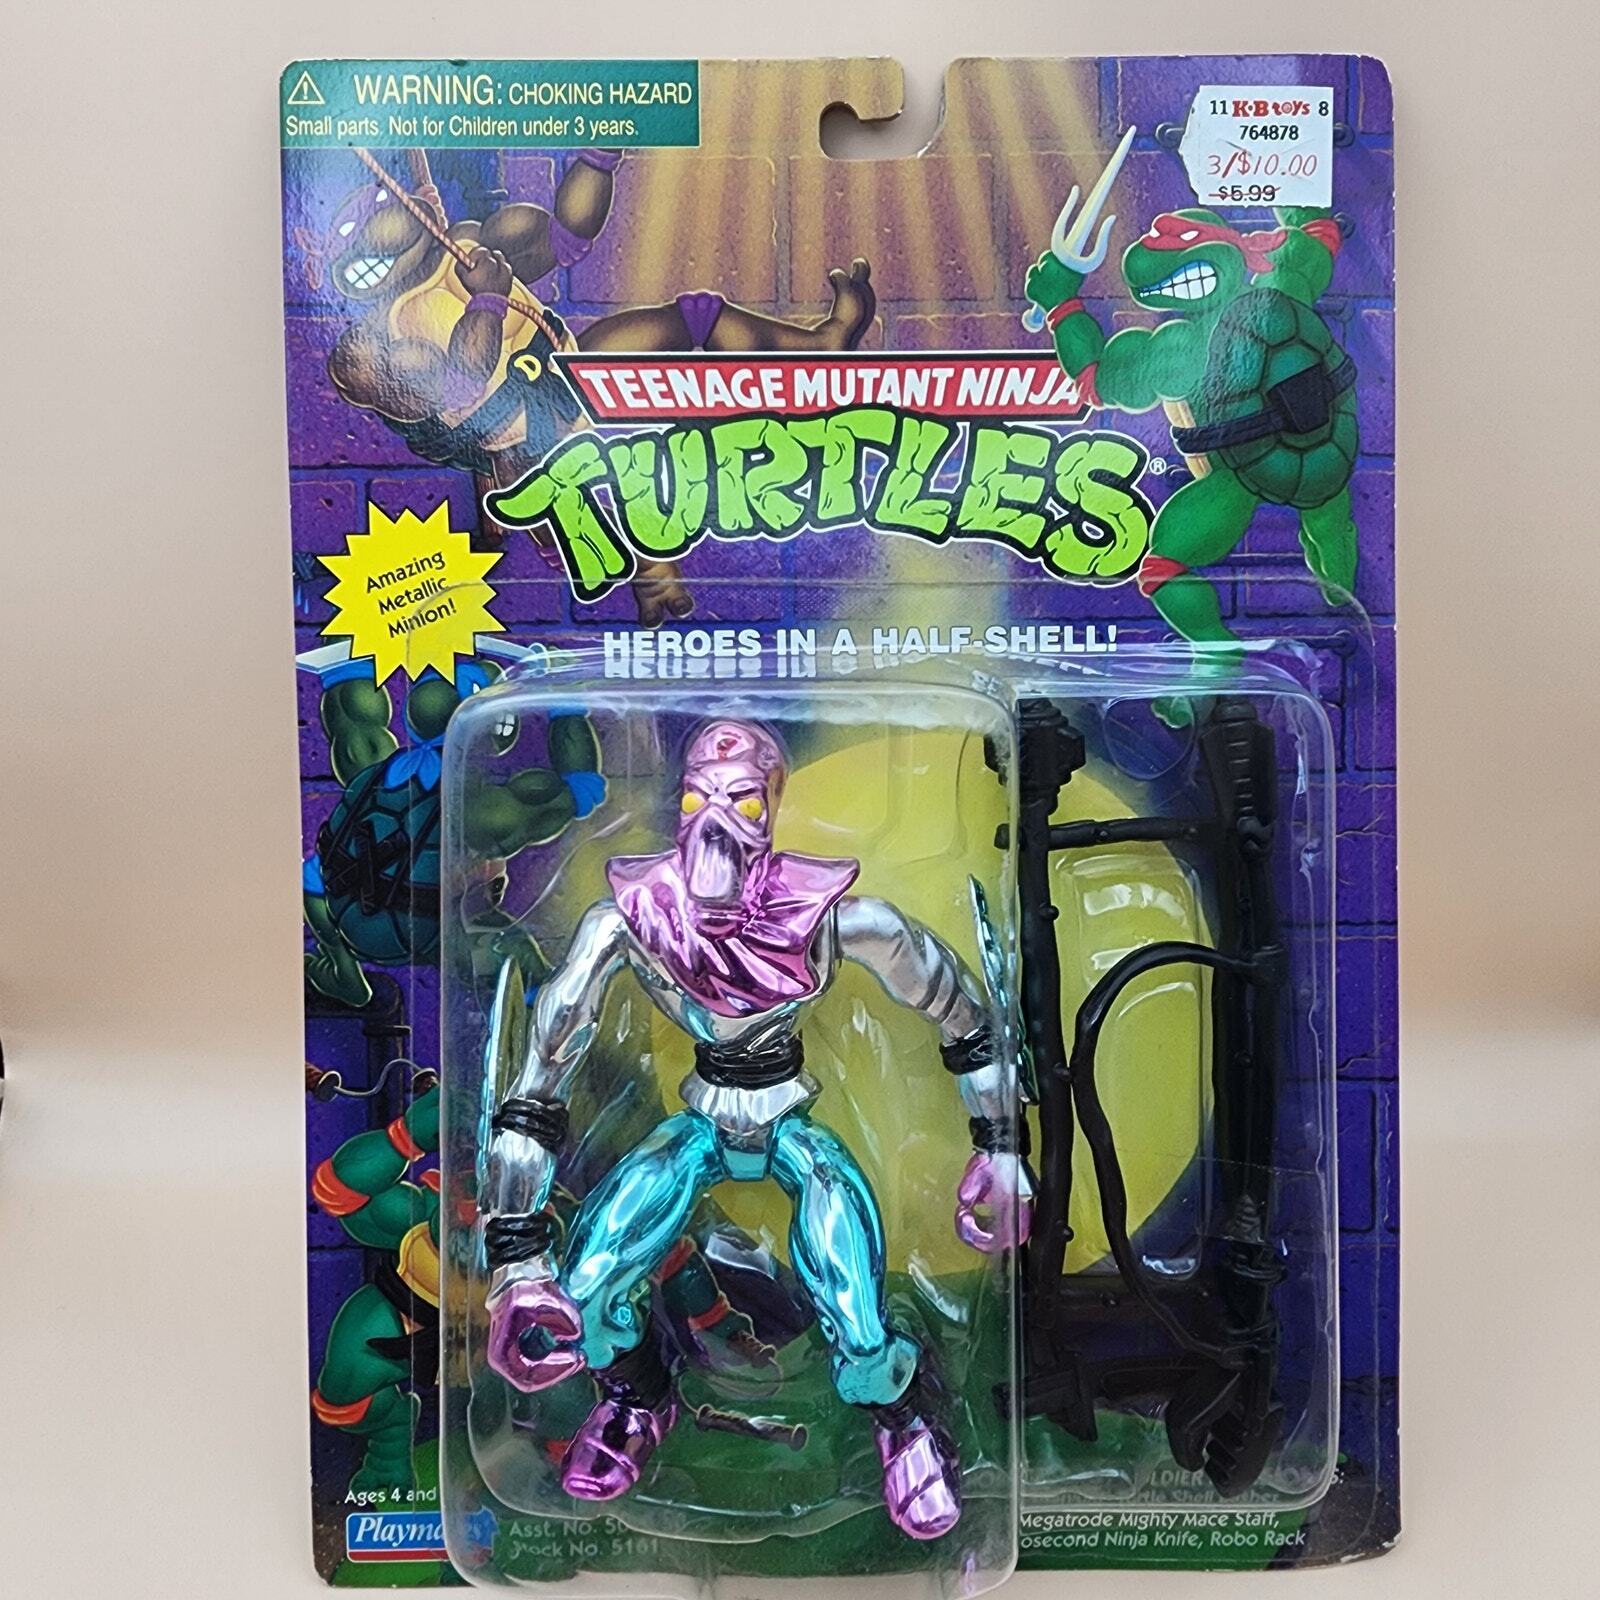 Teenage Mutant Ninja Turtles TMNT (Vintage 1998) NEW NIB Robotic FOOT SOLDIER